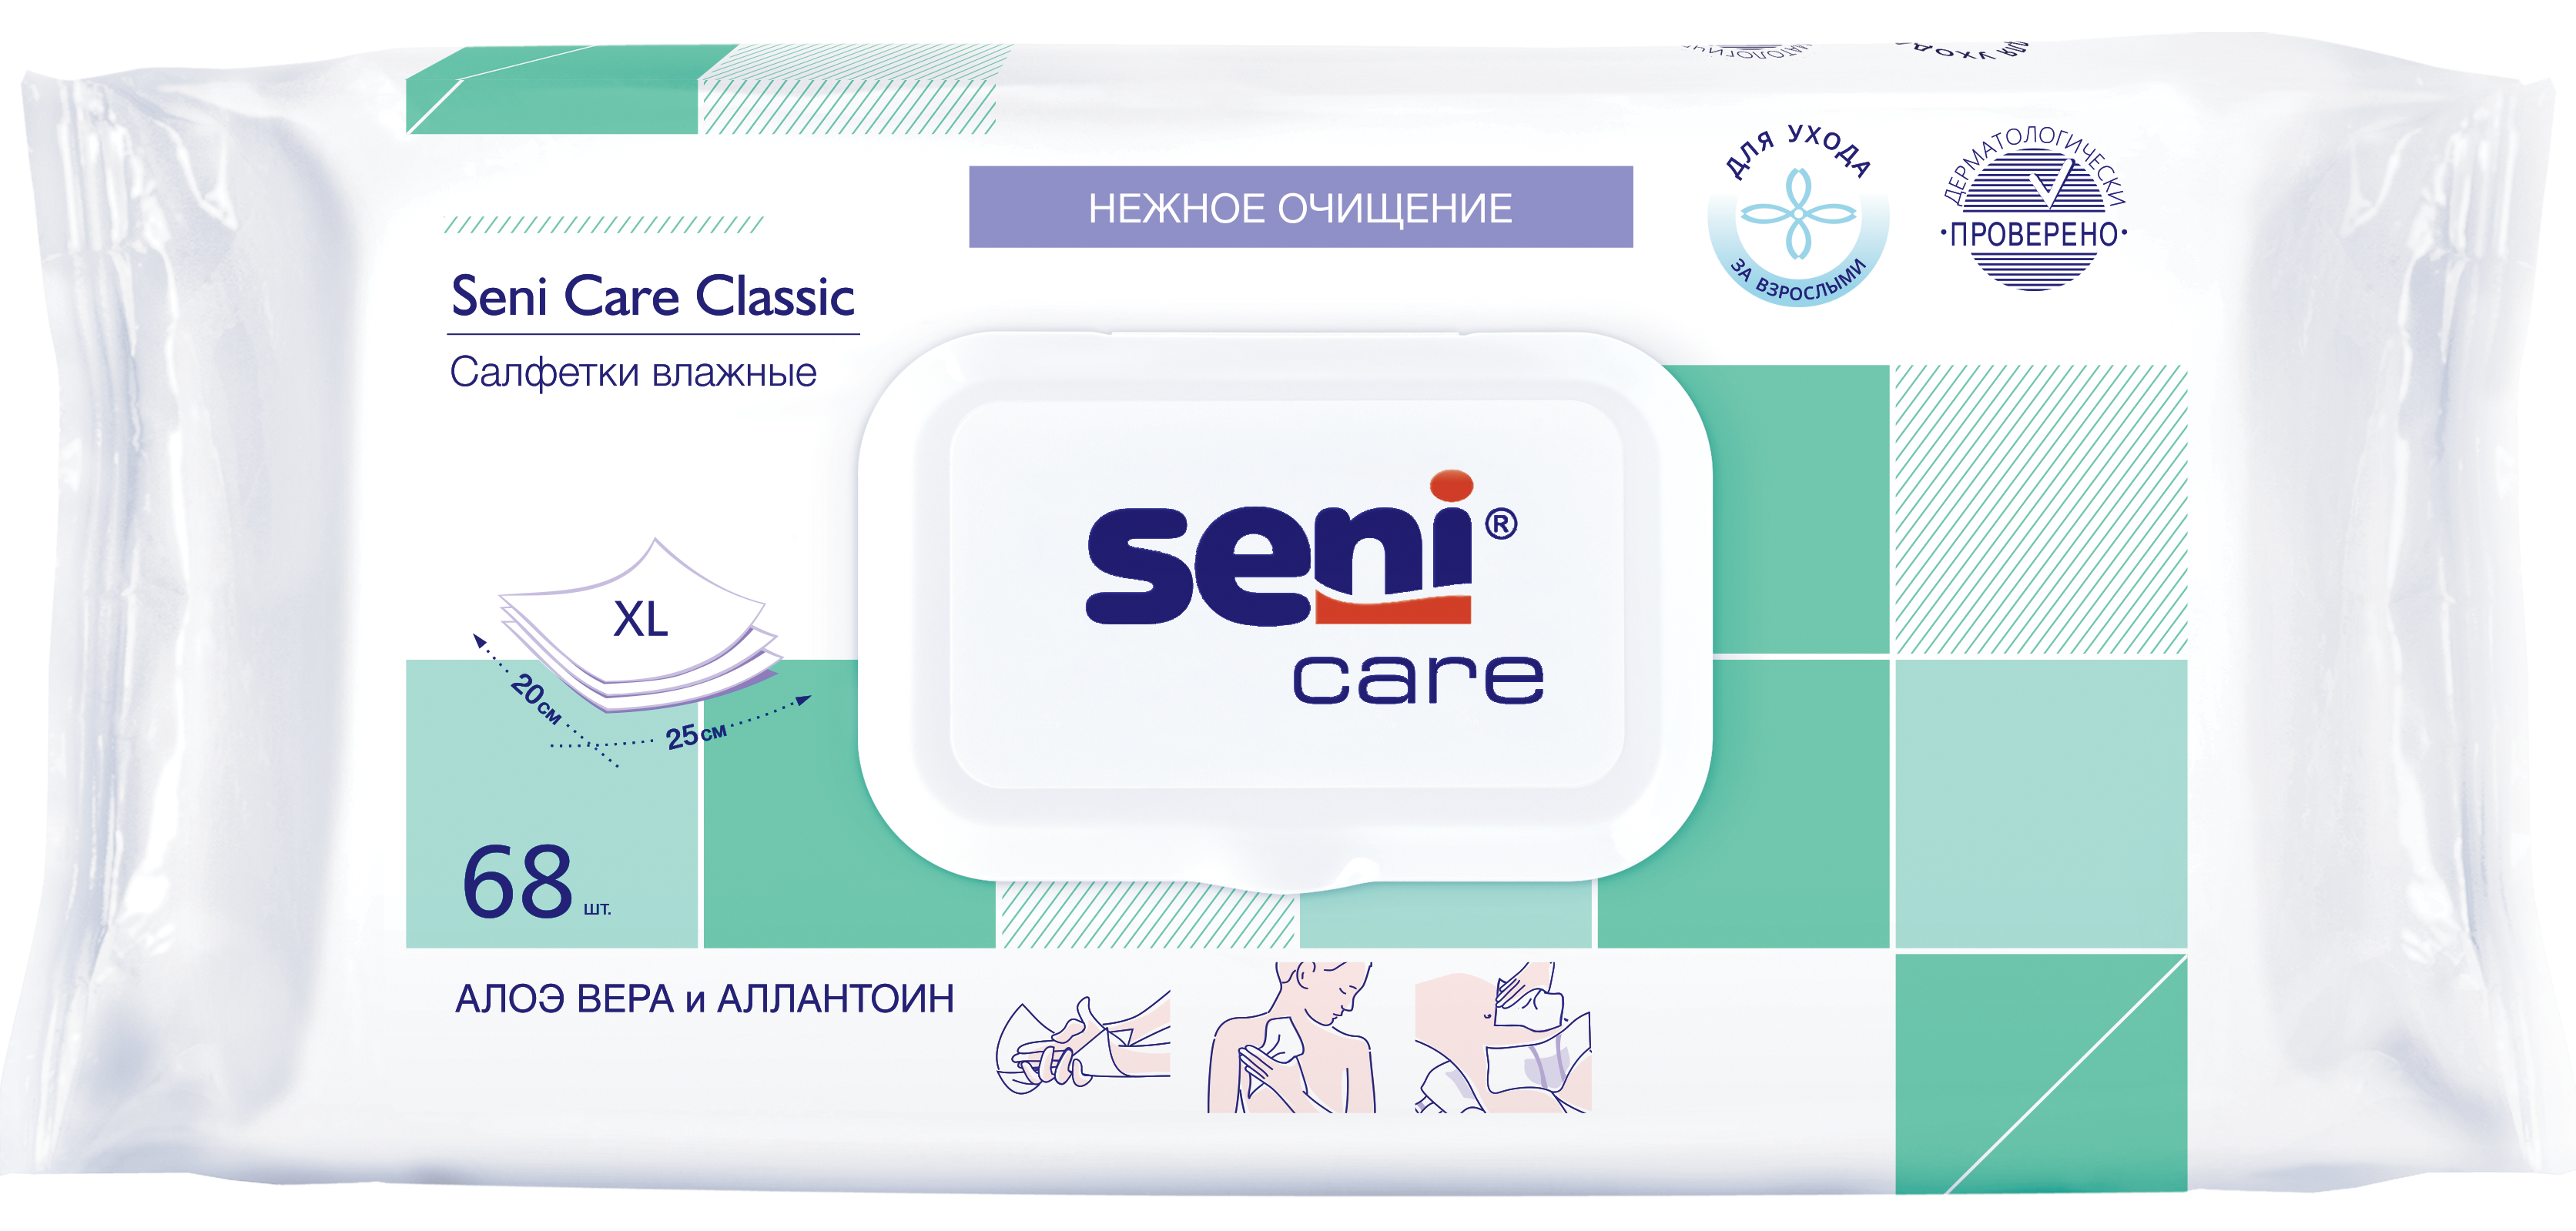 Seni Care Classic, салфетки влажные (алоэ вера и аллантоин), 68 шт.